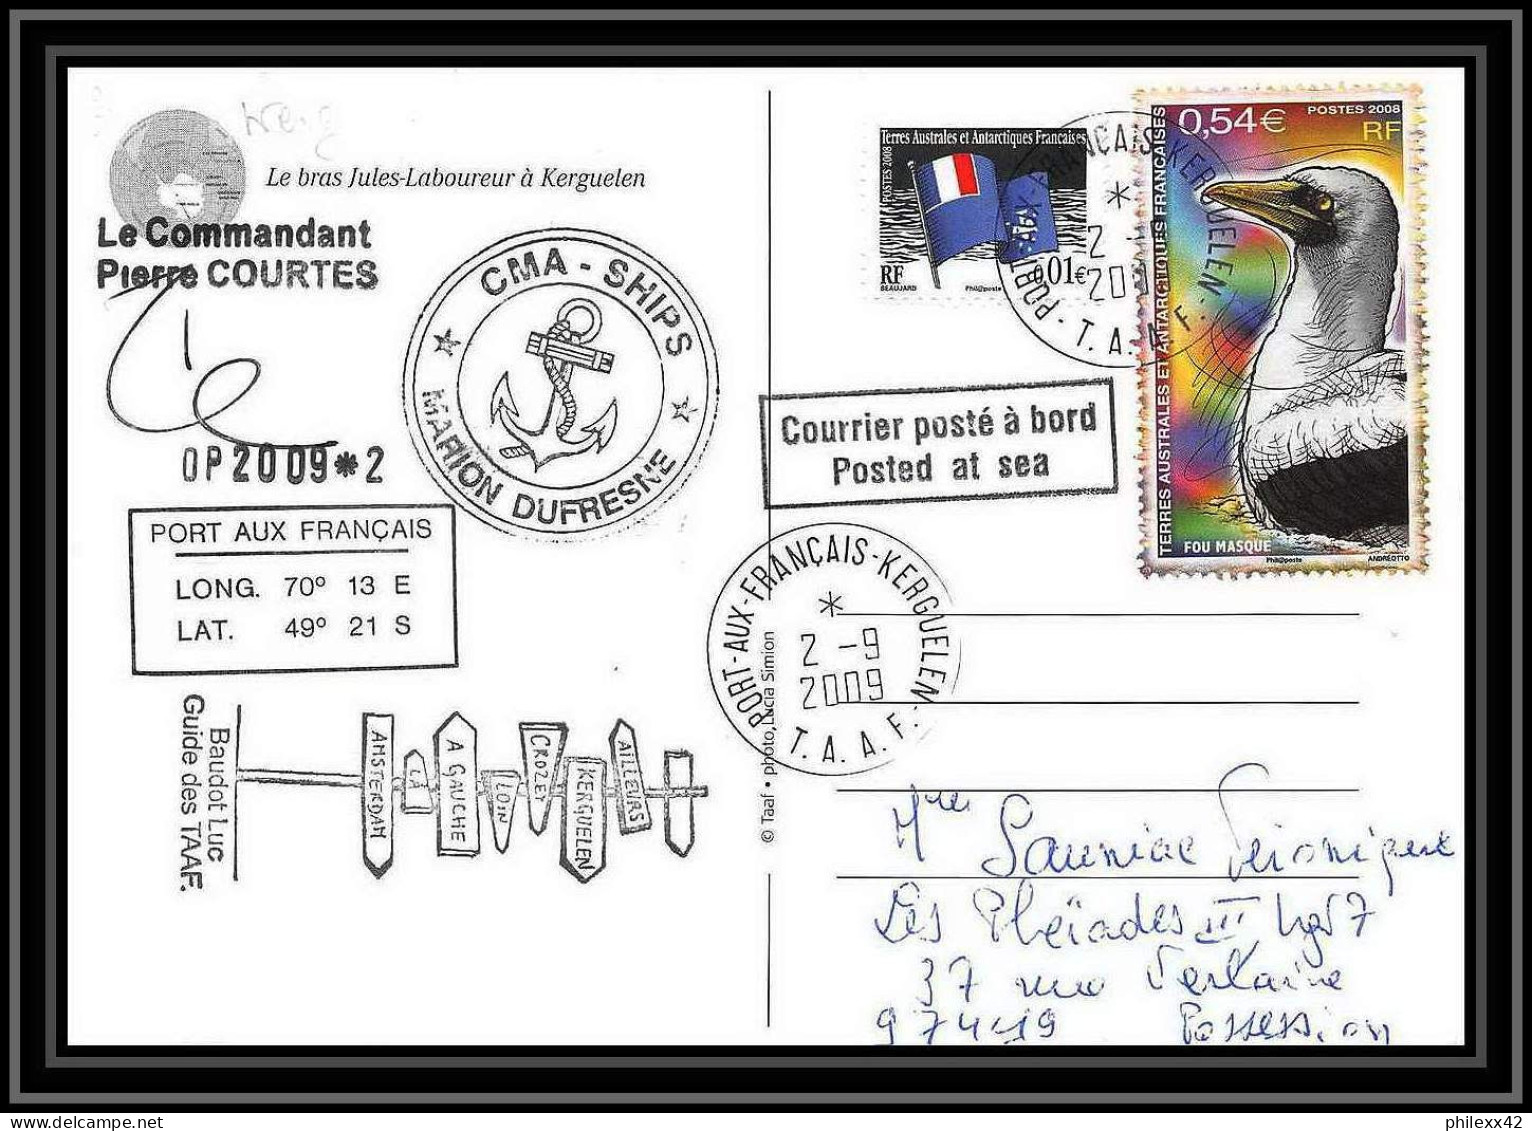 2943 ANTARCTIC Terres Australes (taaf)-carte Postale Dufresne 2 Signé Signed OP 2009/2 Kerguelen 2/9/2009 N°516 - Briefe U. Dokumente